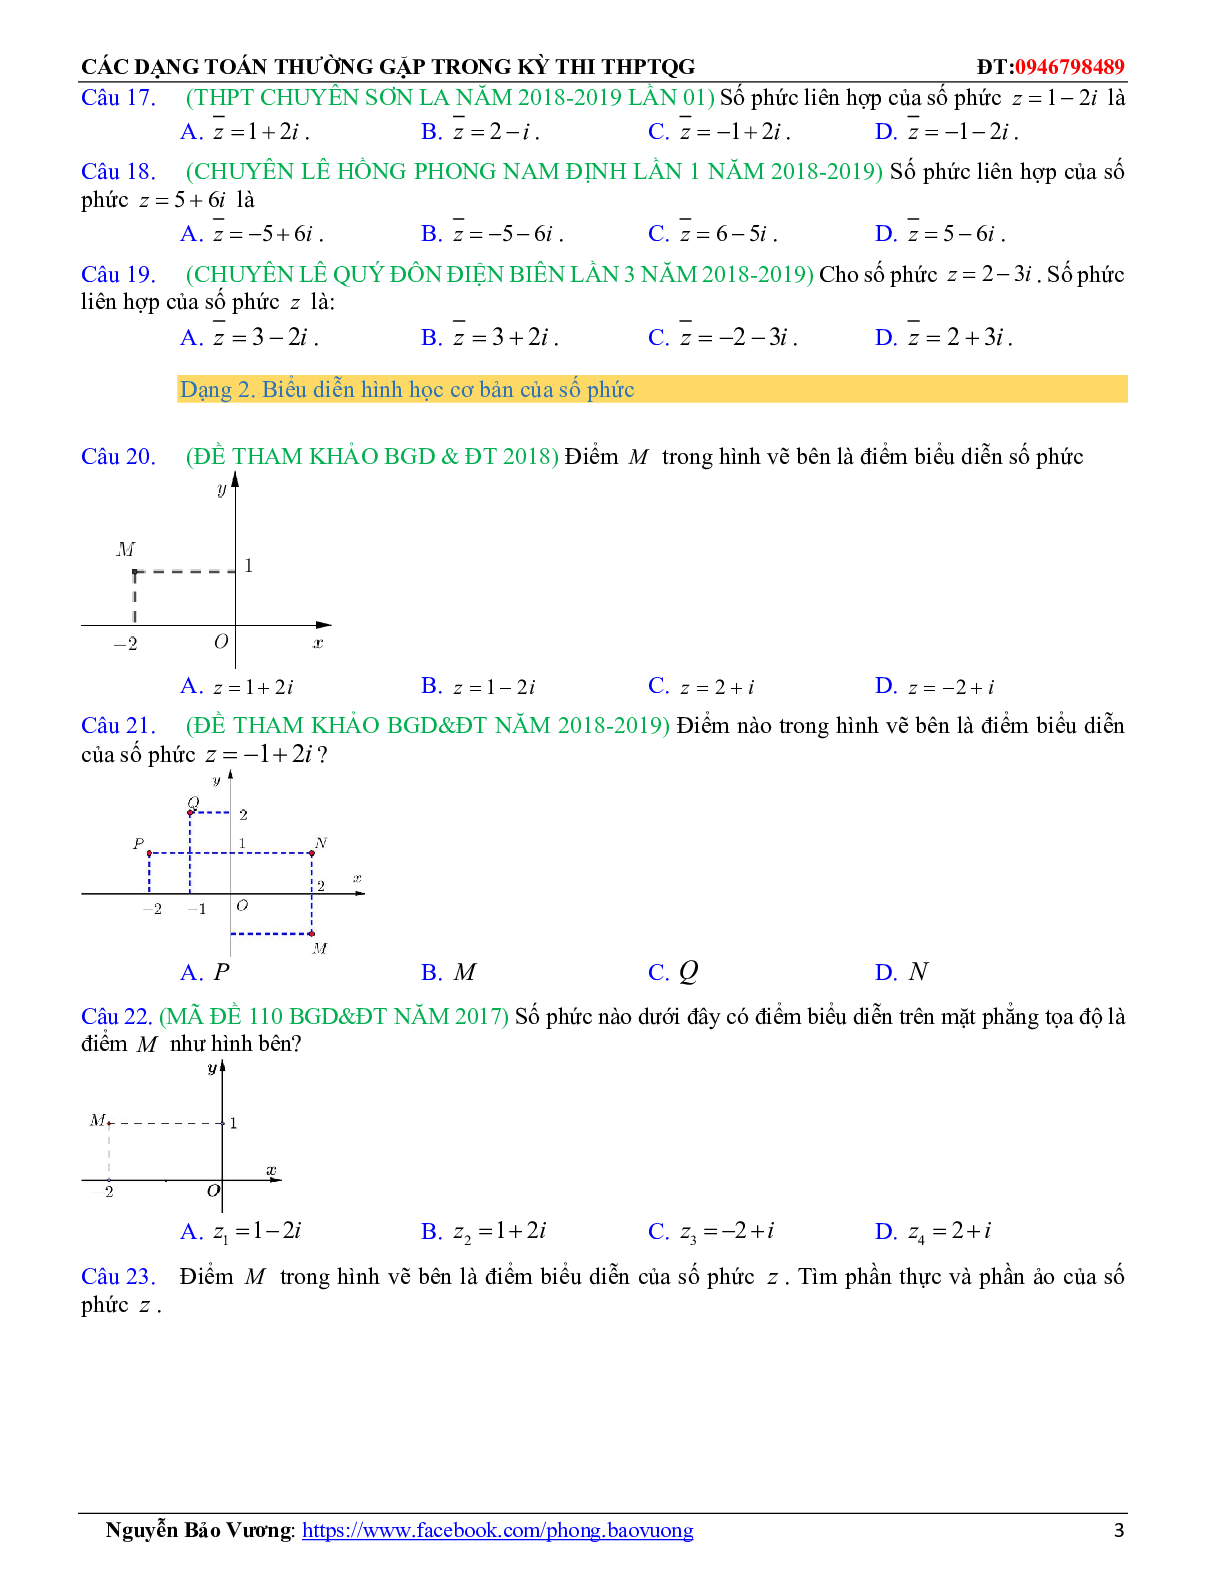 Các dạng toán về số phức thường gặp trong kỳ thi THPTQG (trang 3)